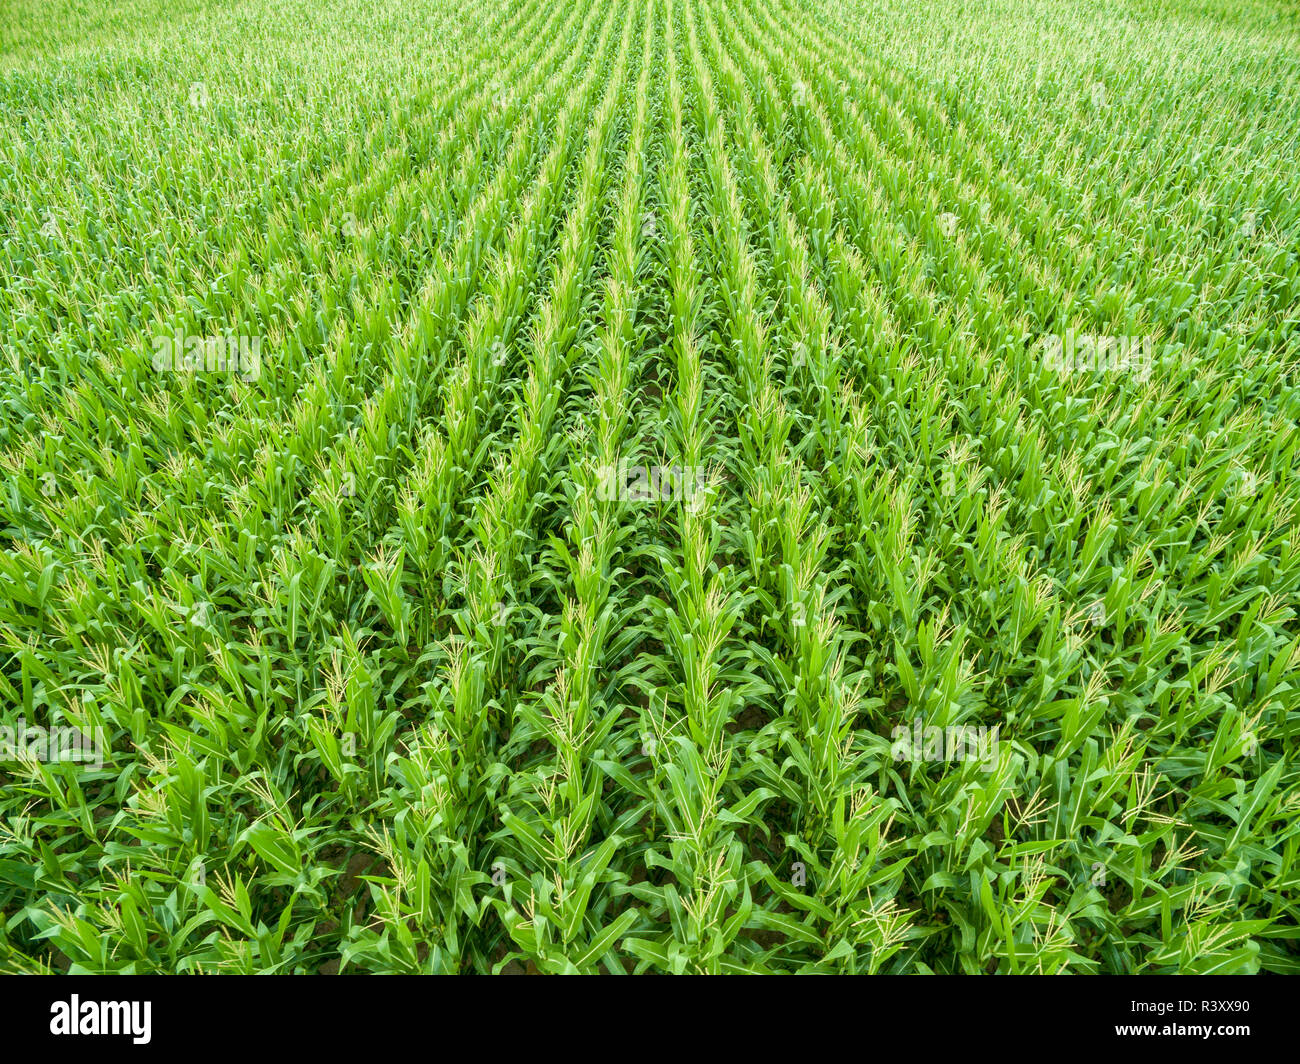 Corn field, Marion County, Illinois Stock Photo